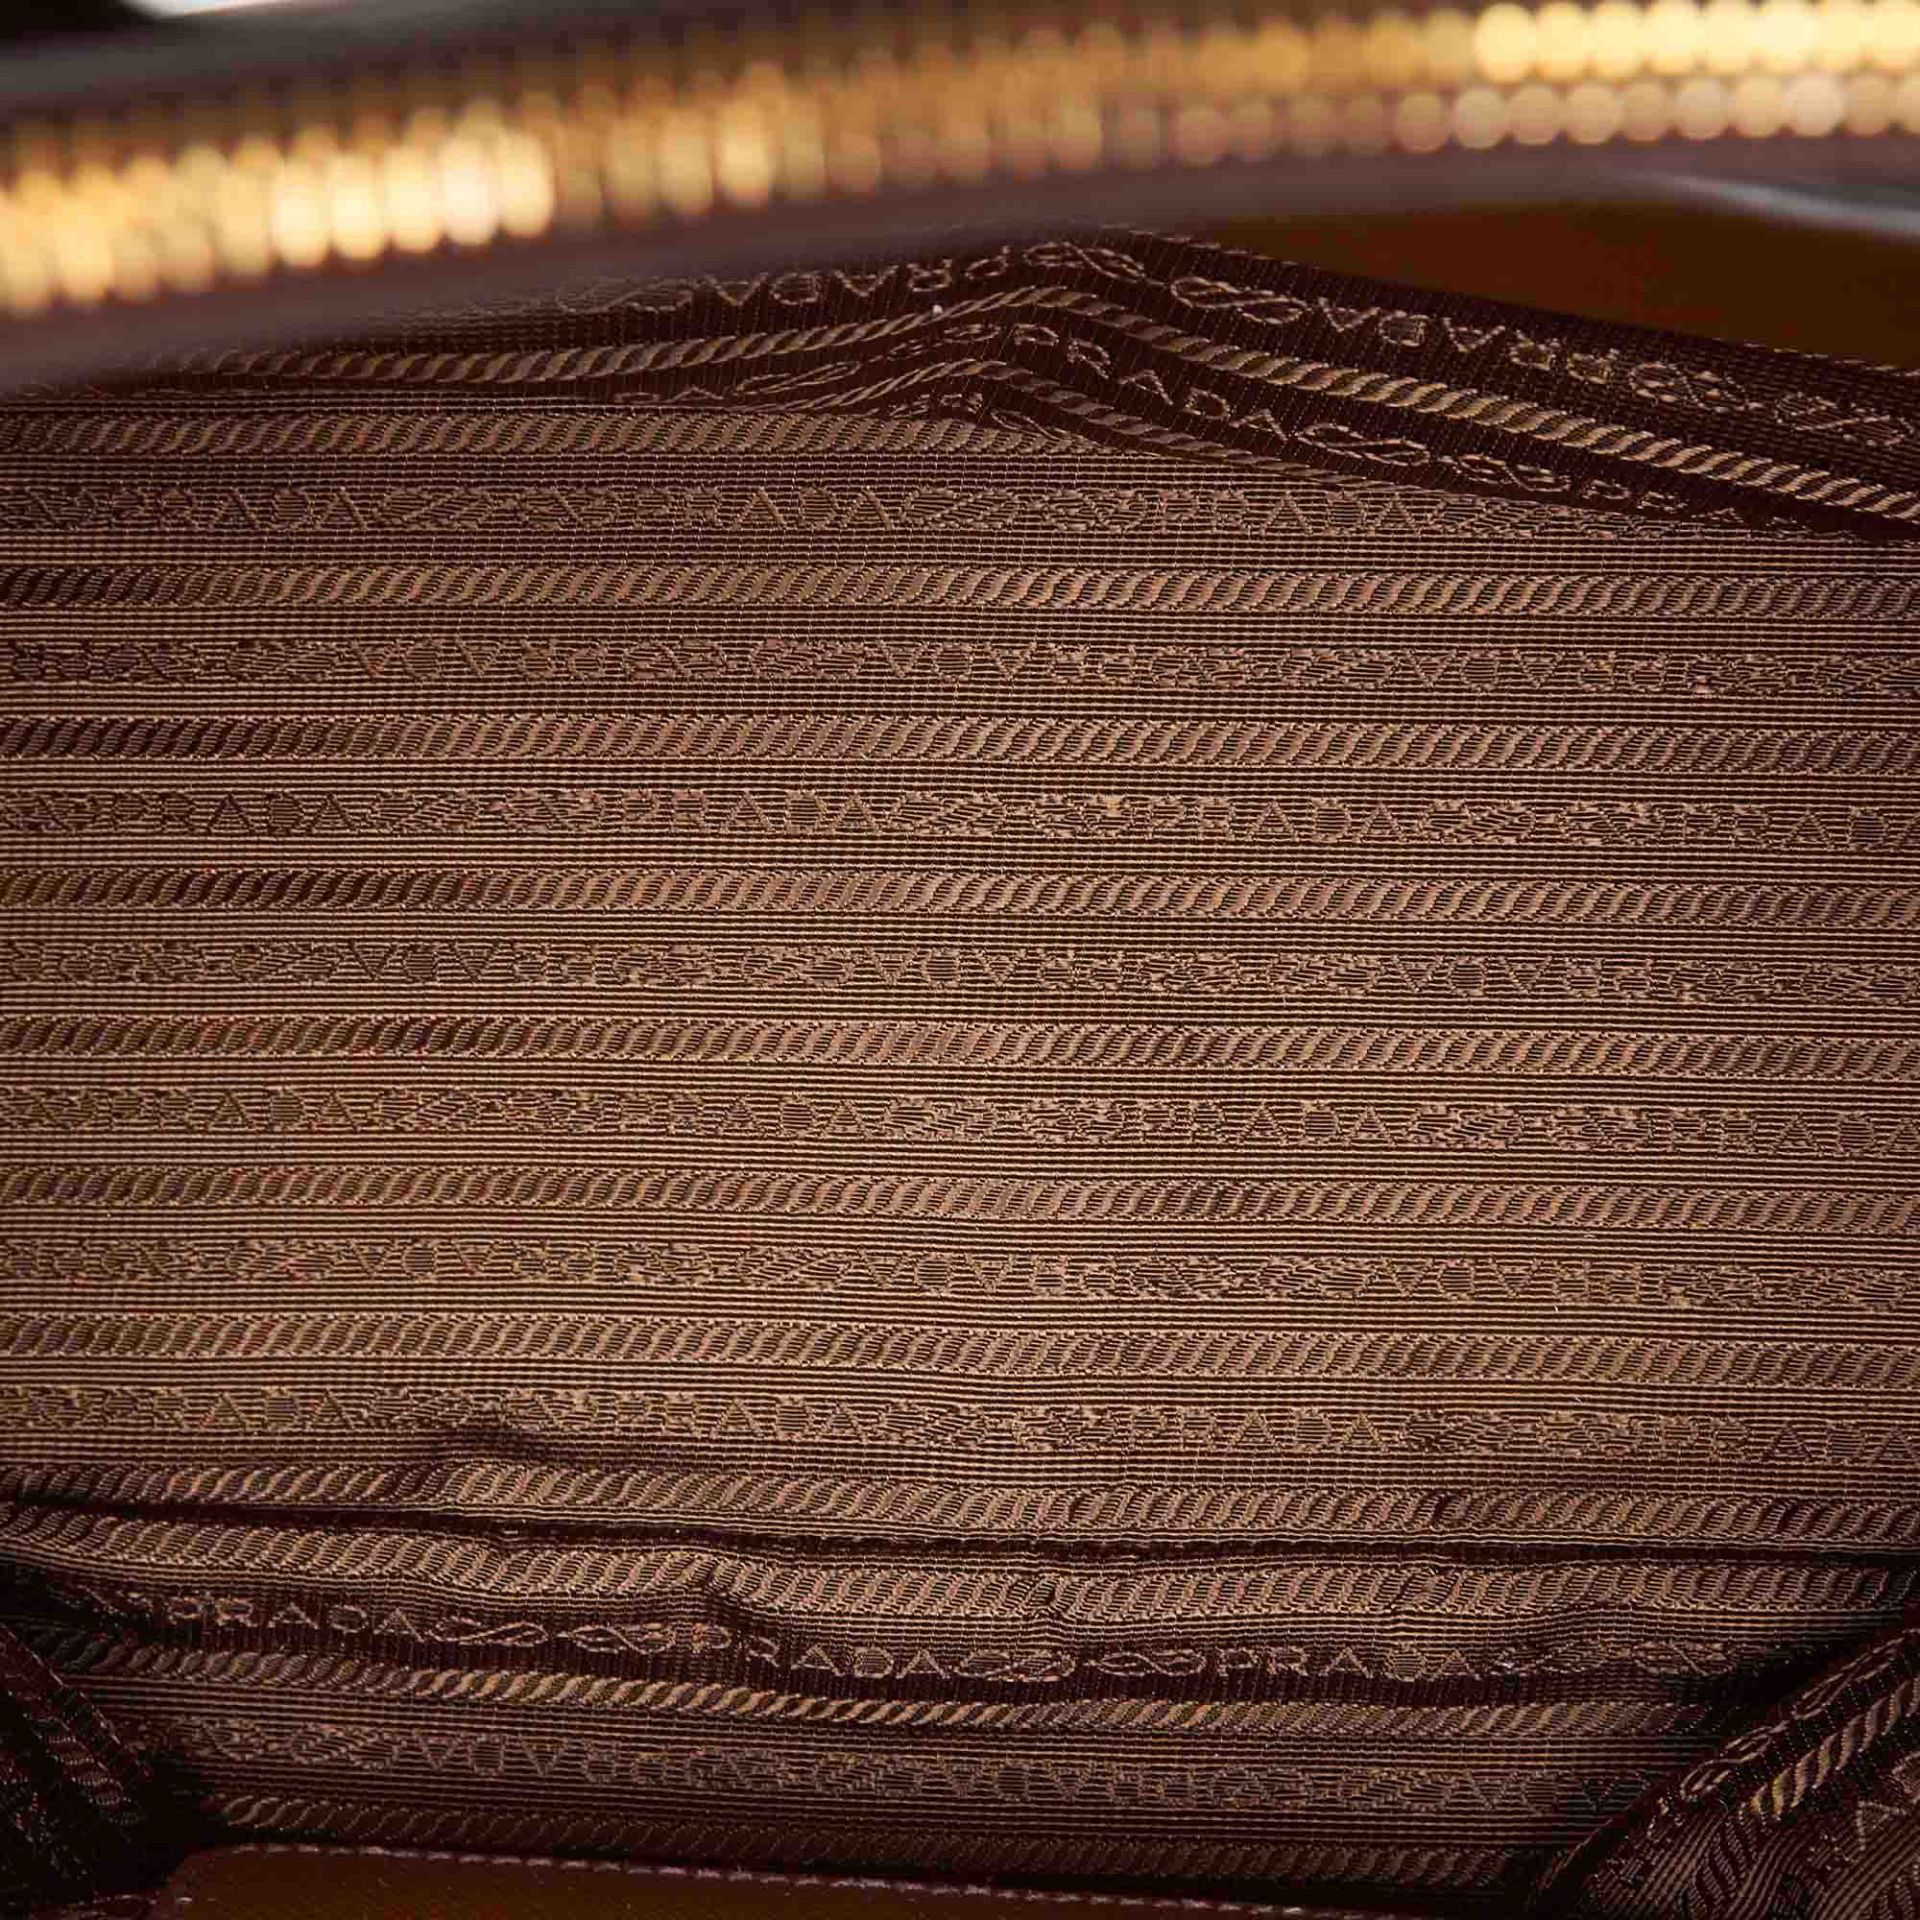 Prada Saffiano Leather Galleria Handbag - Image 10 of 10